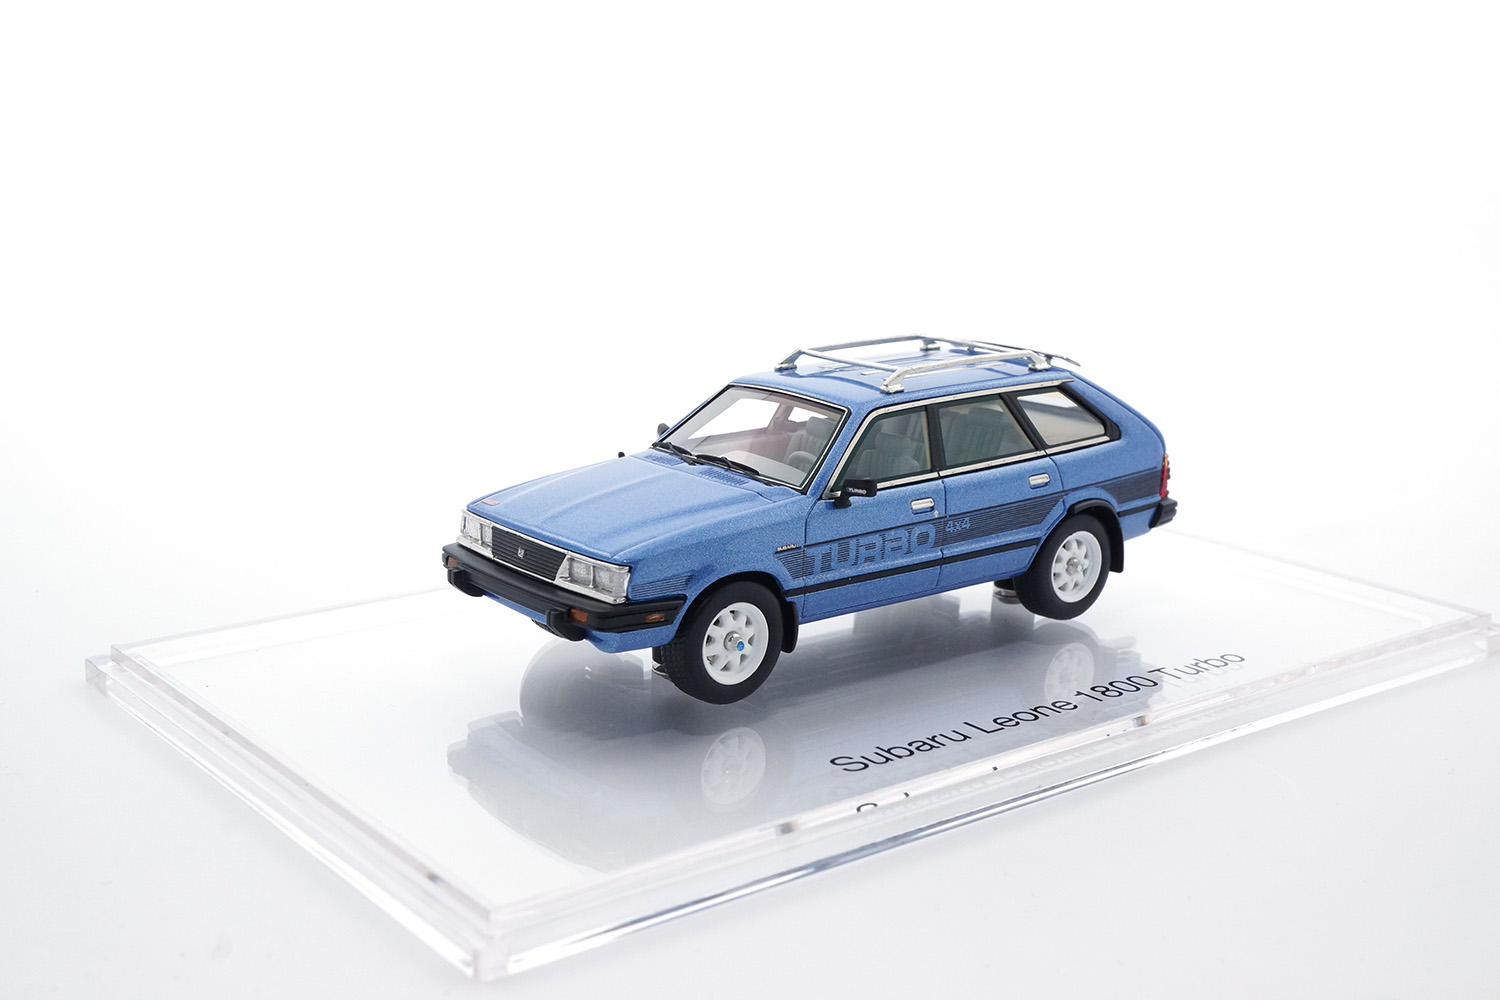 DNA 000005 Subaru Leone 1800 Turbo - 1983 1:43